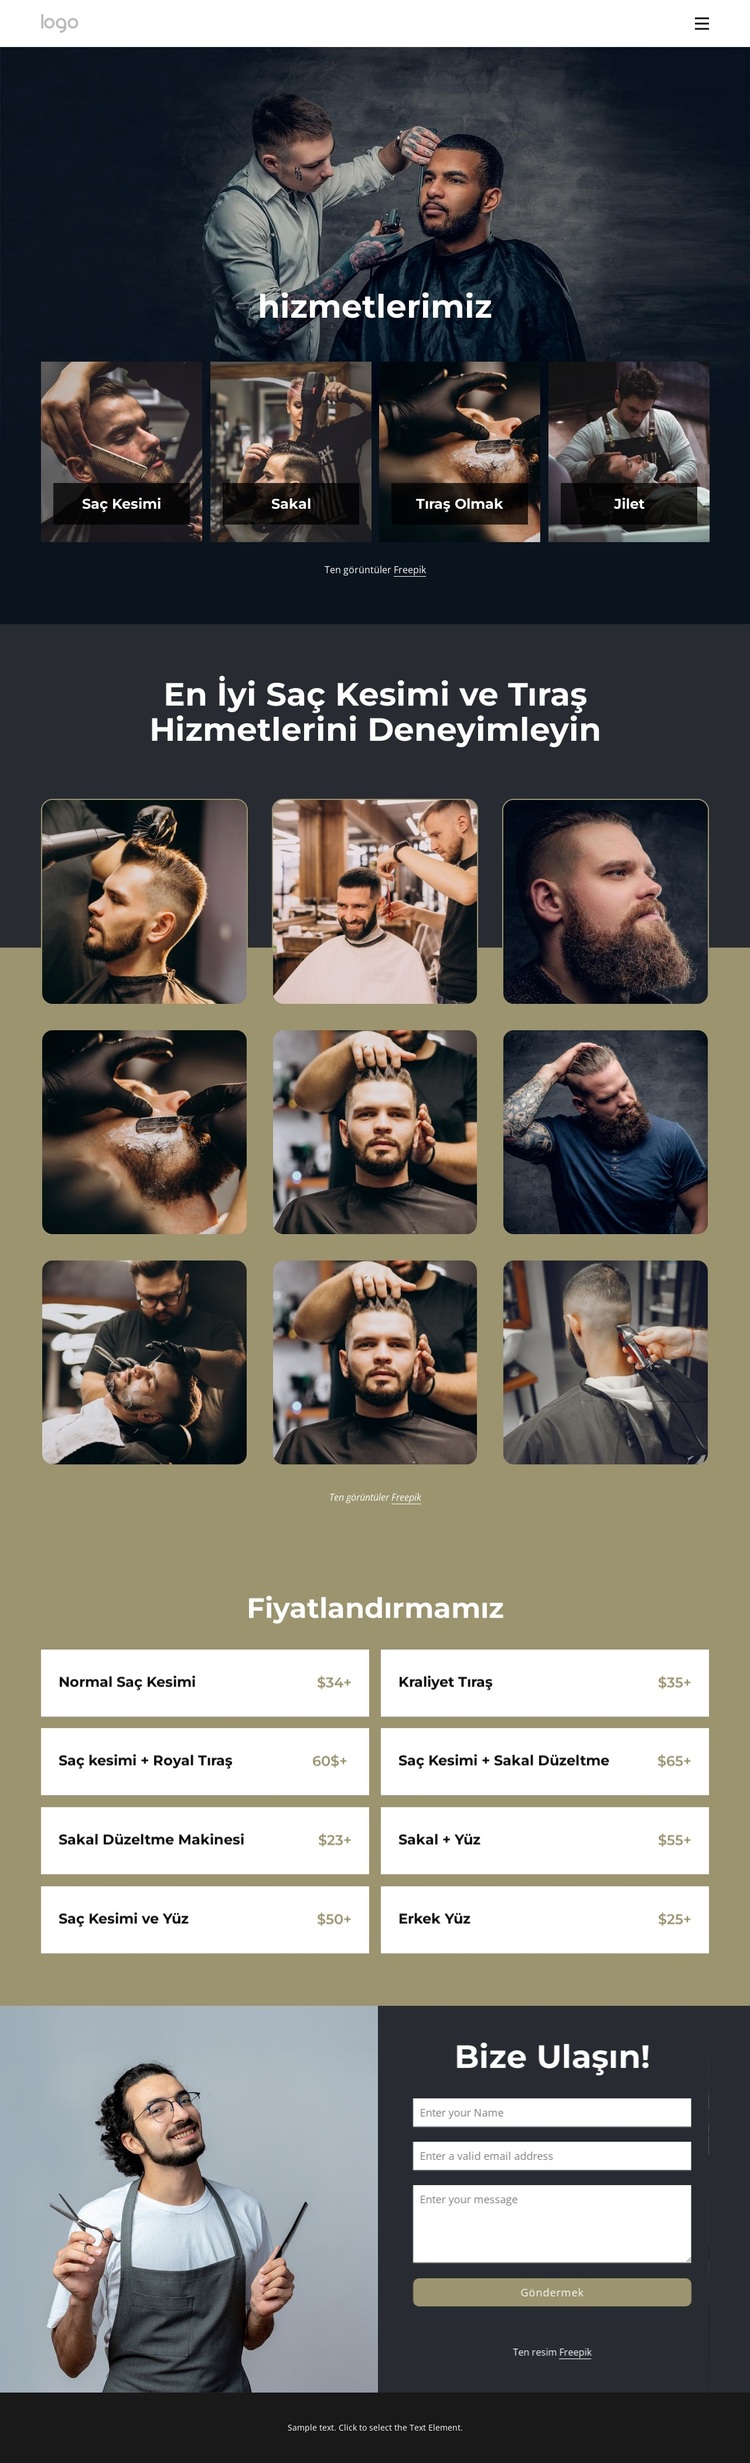 En iyi saç kesimi ve tıraş hizmetleri WordPress Teması